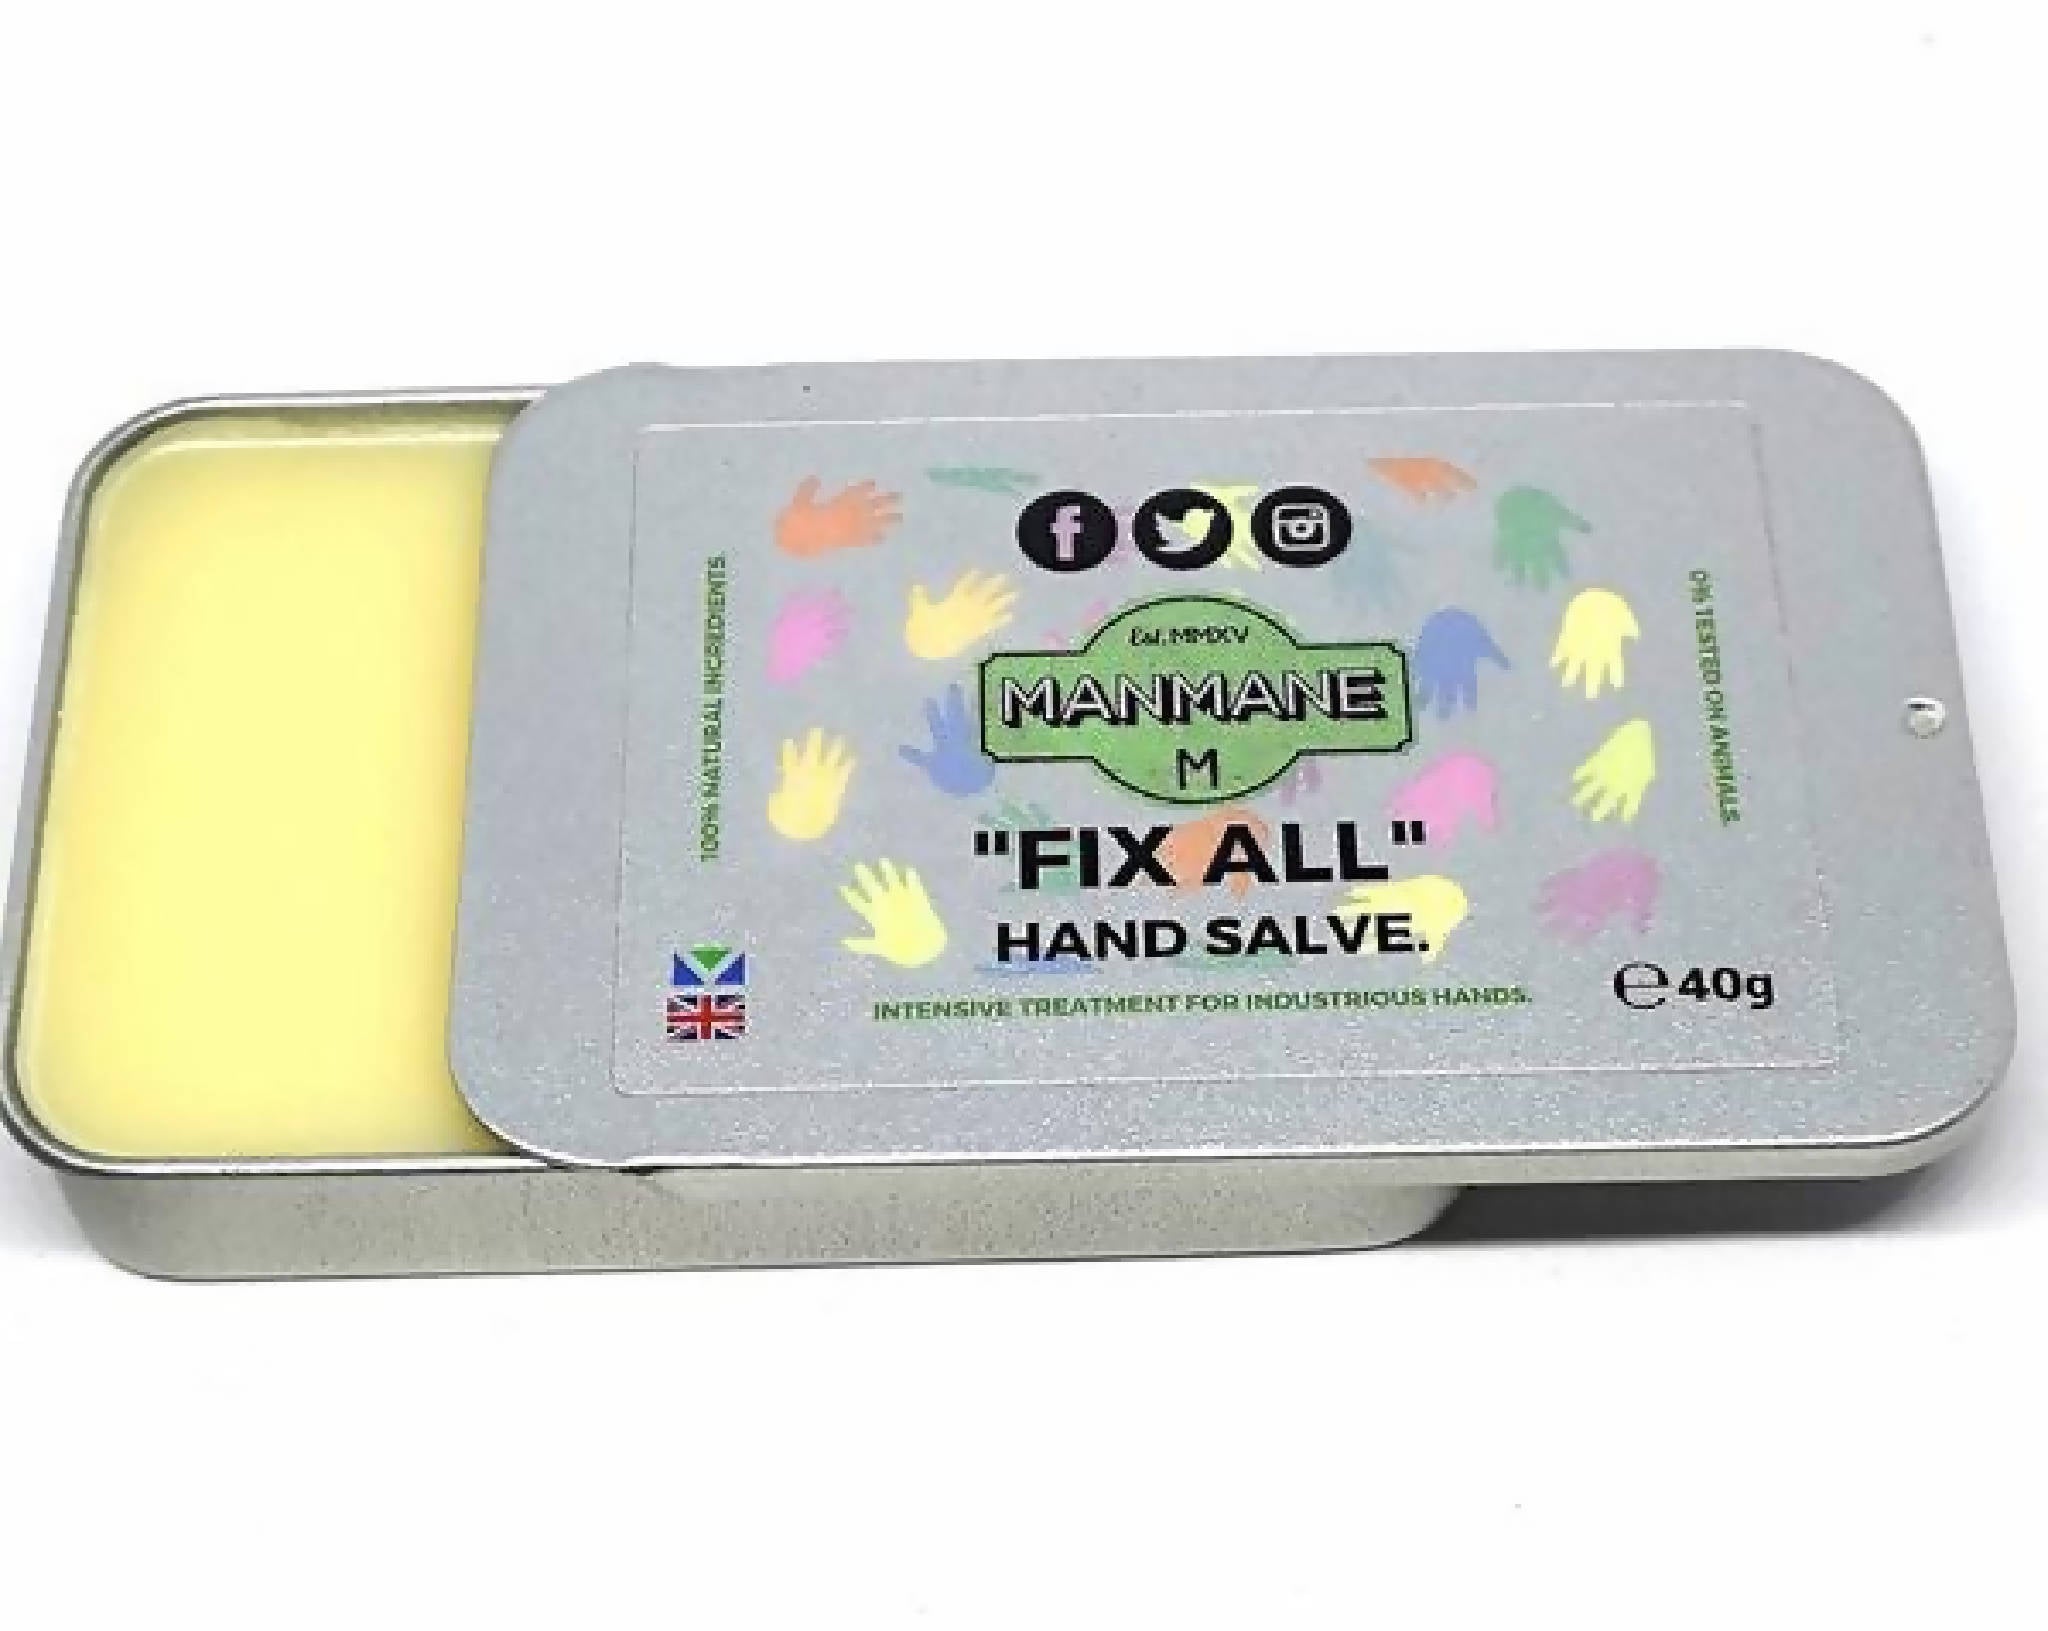 Manmane "Fix all" Hand salve 40g slide tin